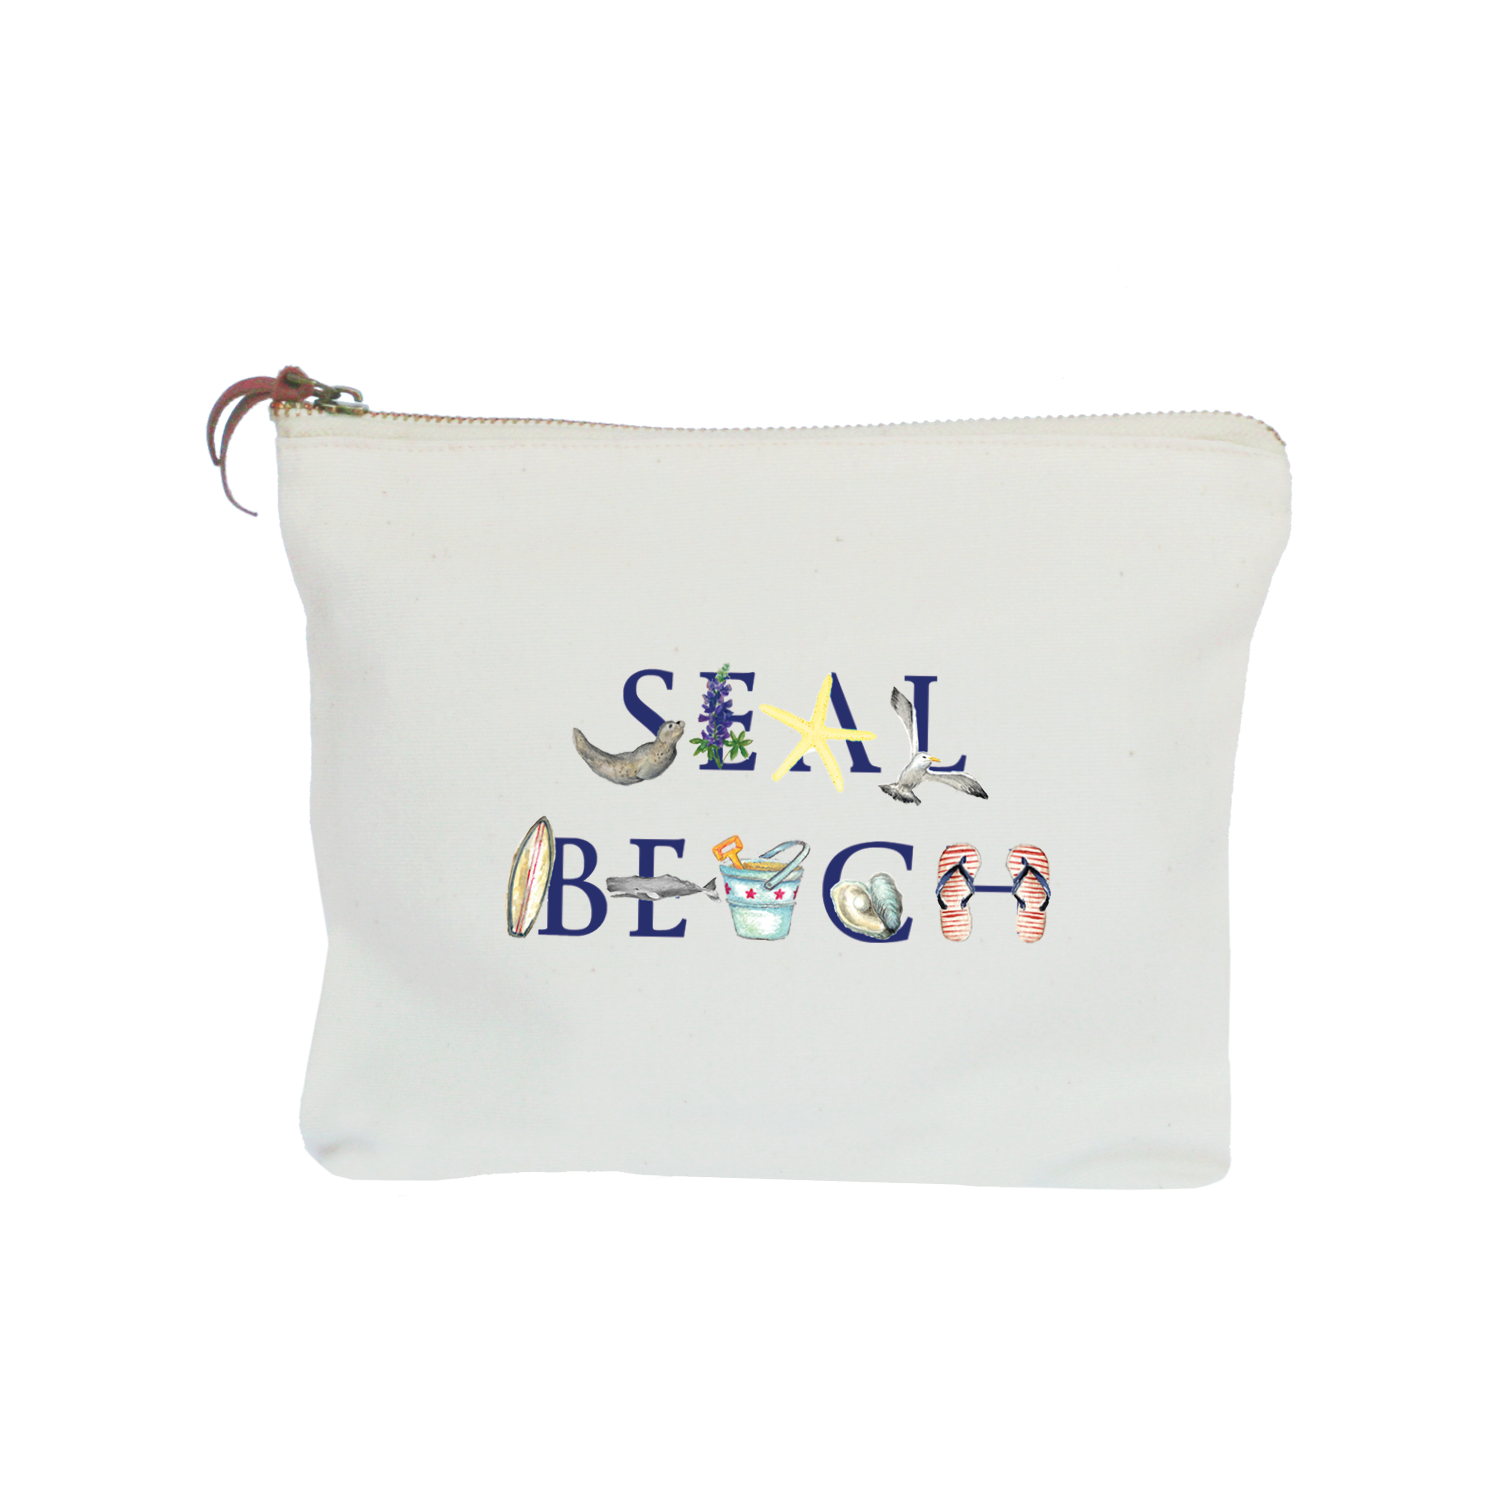 seal beach zipper pouch